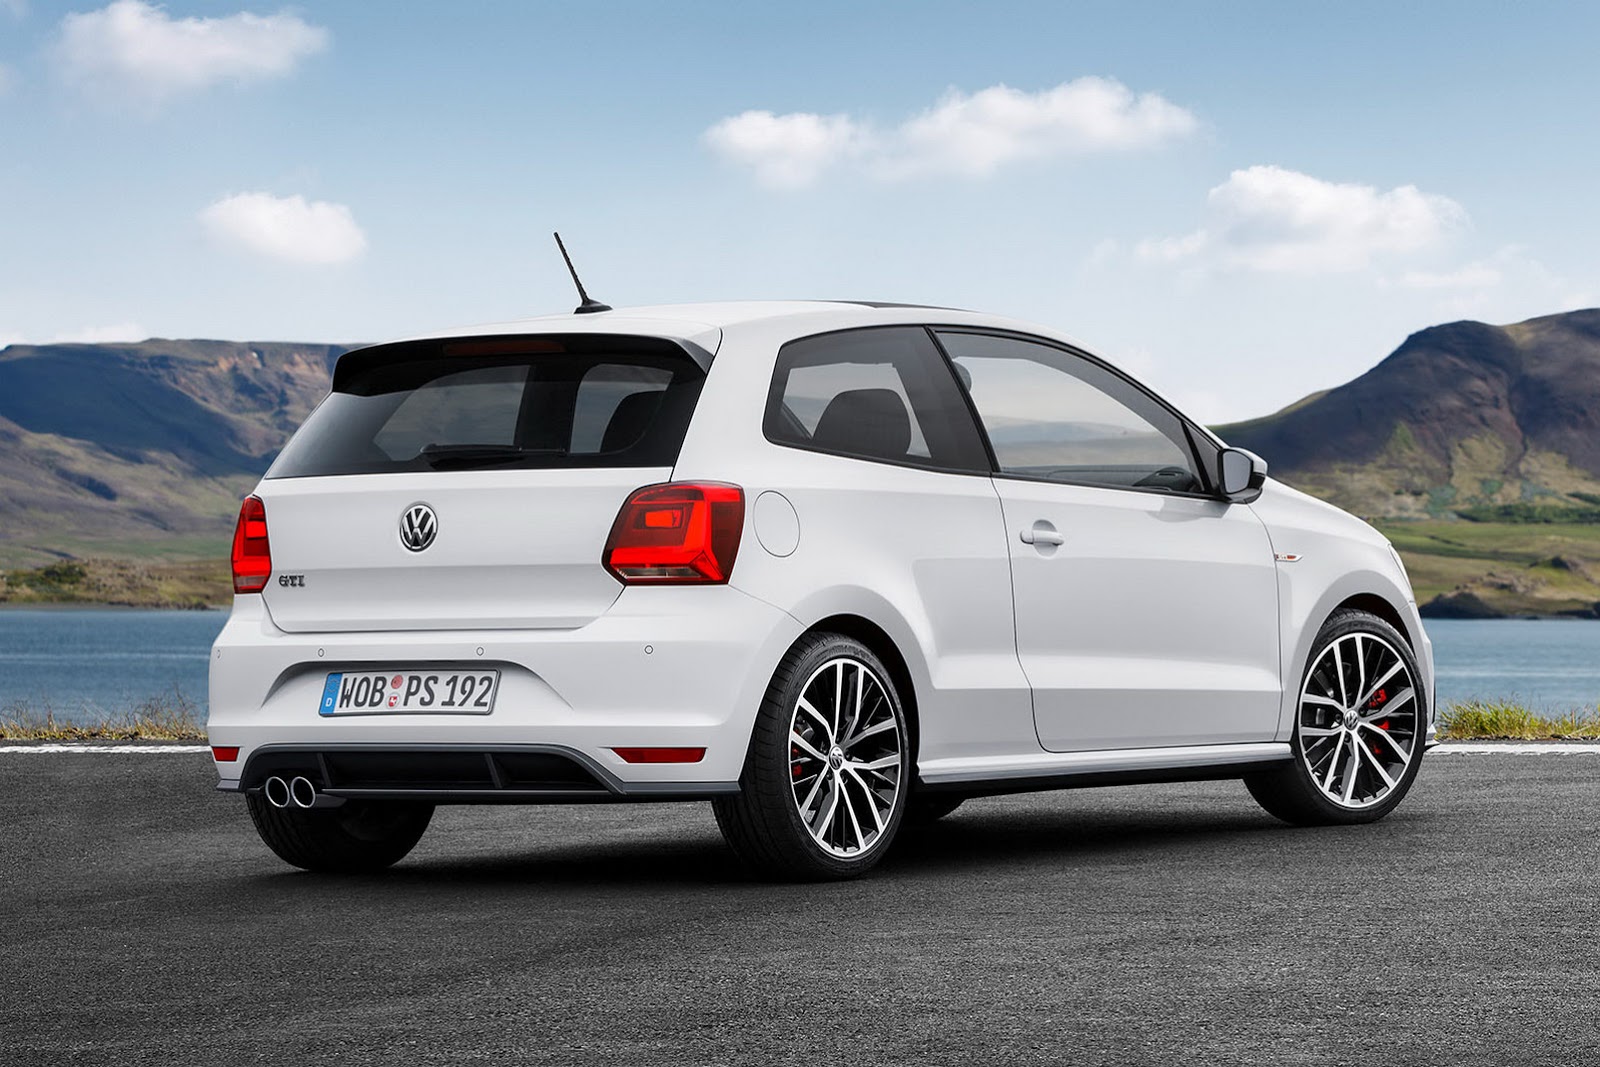 2015-VW-Polo-GT-Facelift-02.jpg